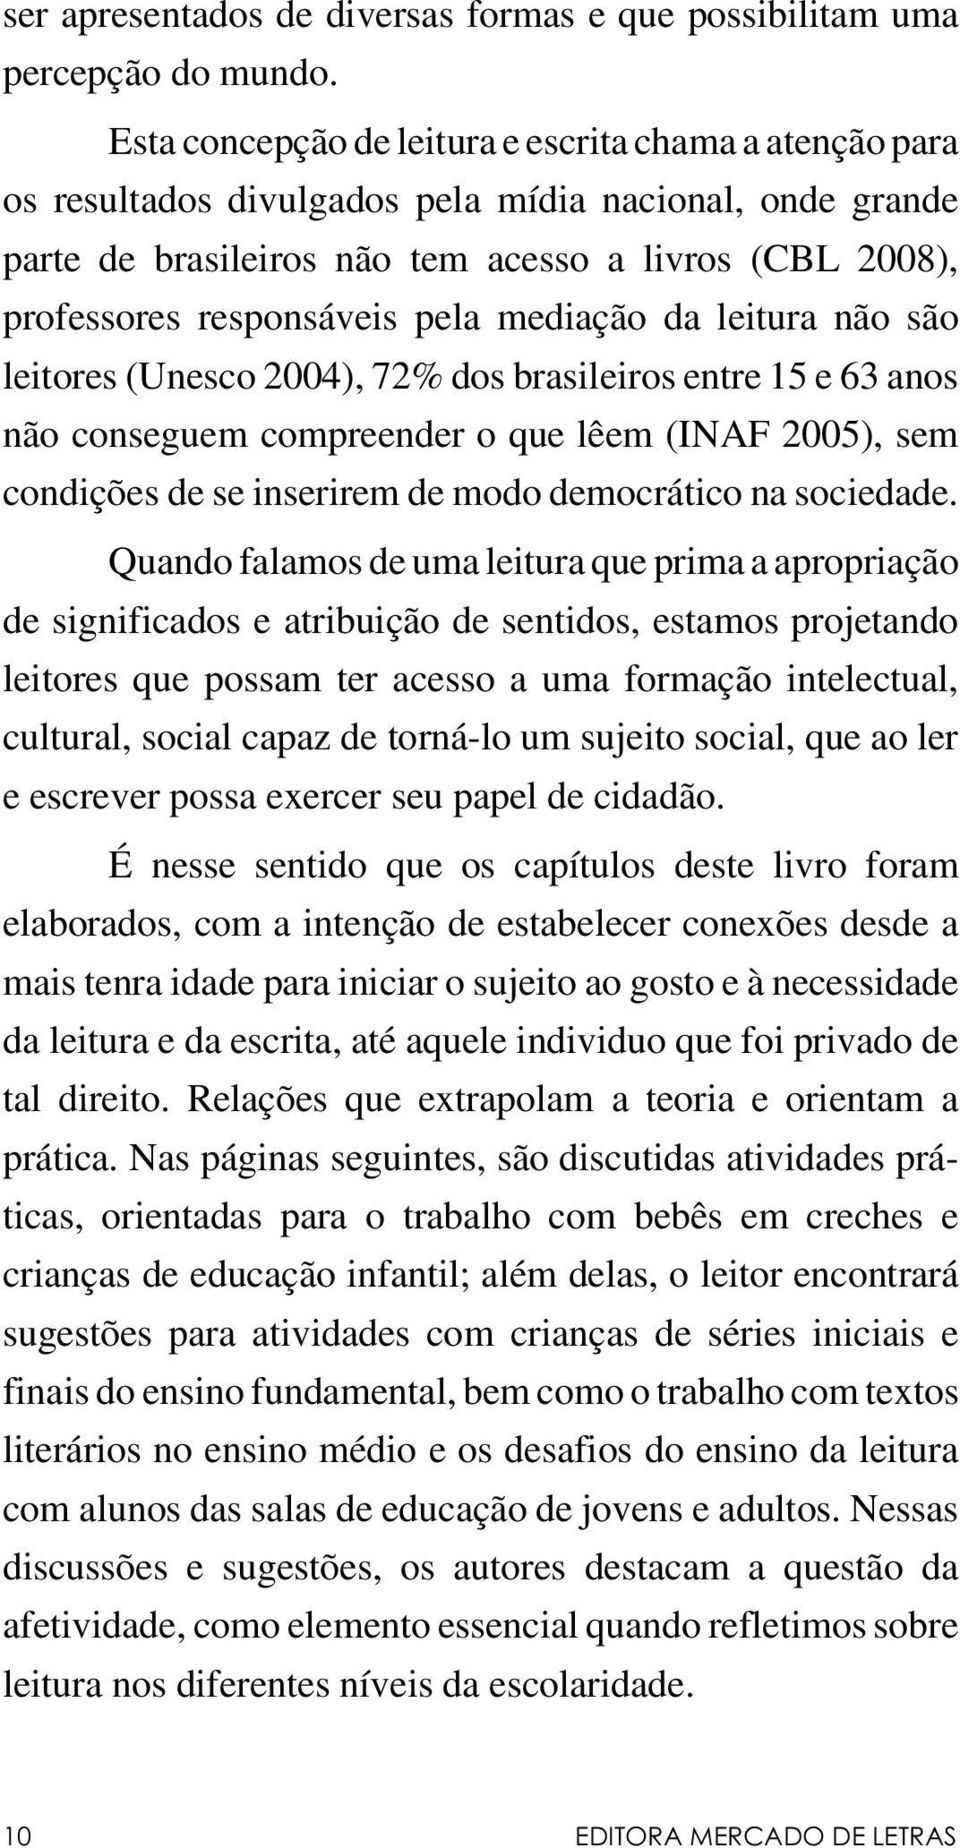 pela mediação da leitura não são leitores (Unesco 2004), 72% dos brasileiros entre 15 e 63 anos não conseguem compreender o que lêem (INAF 2005), sem condições de se inserirem de modo democrático na